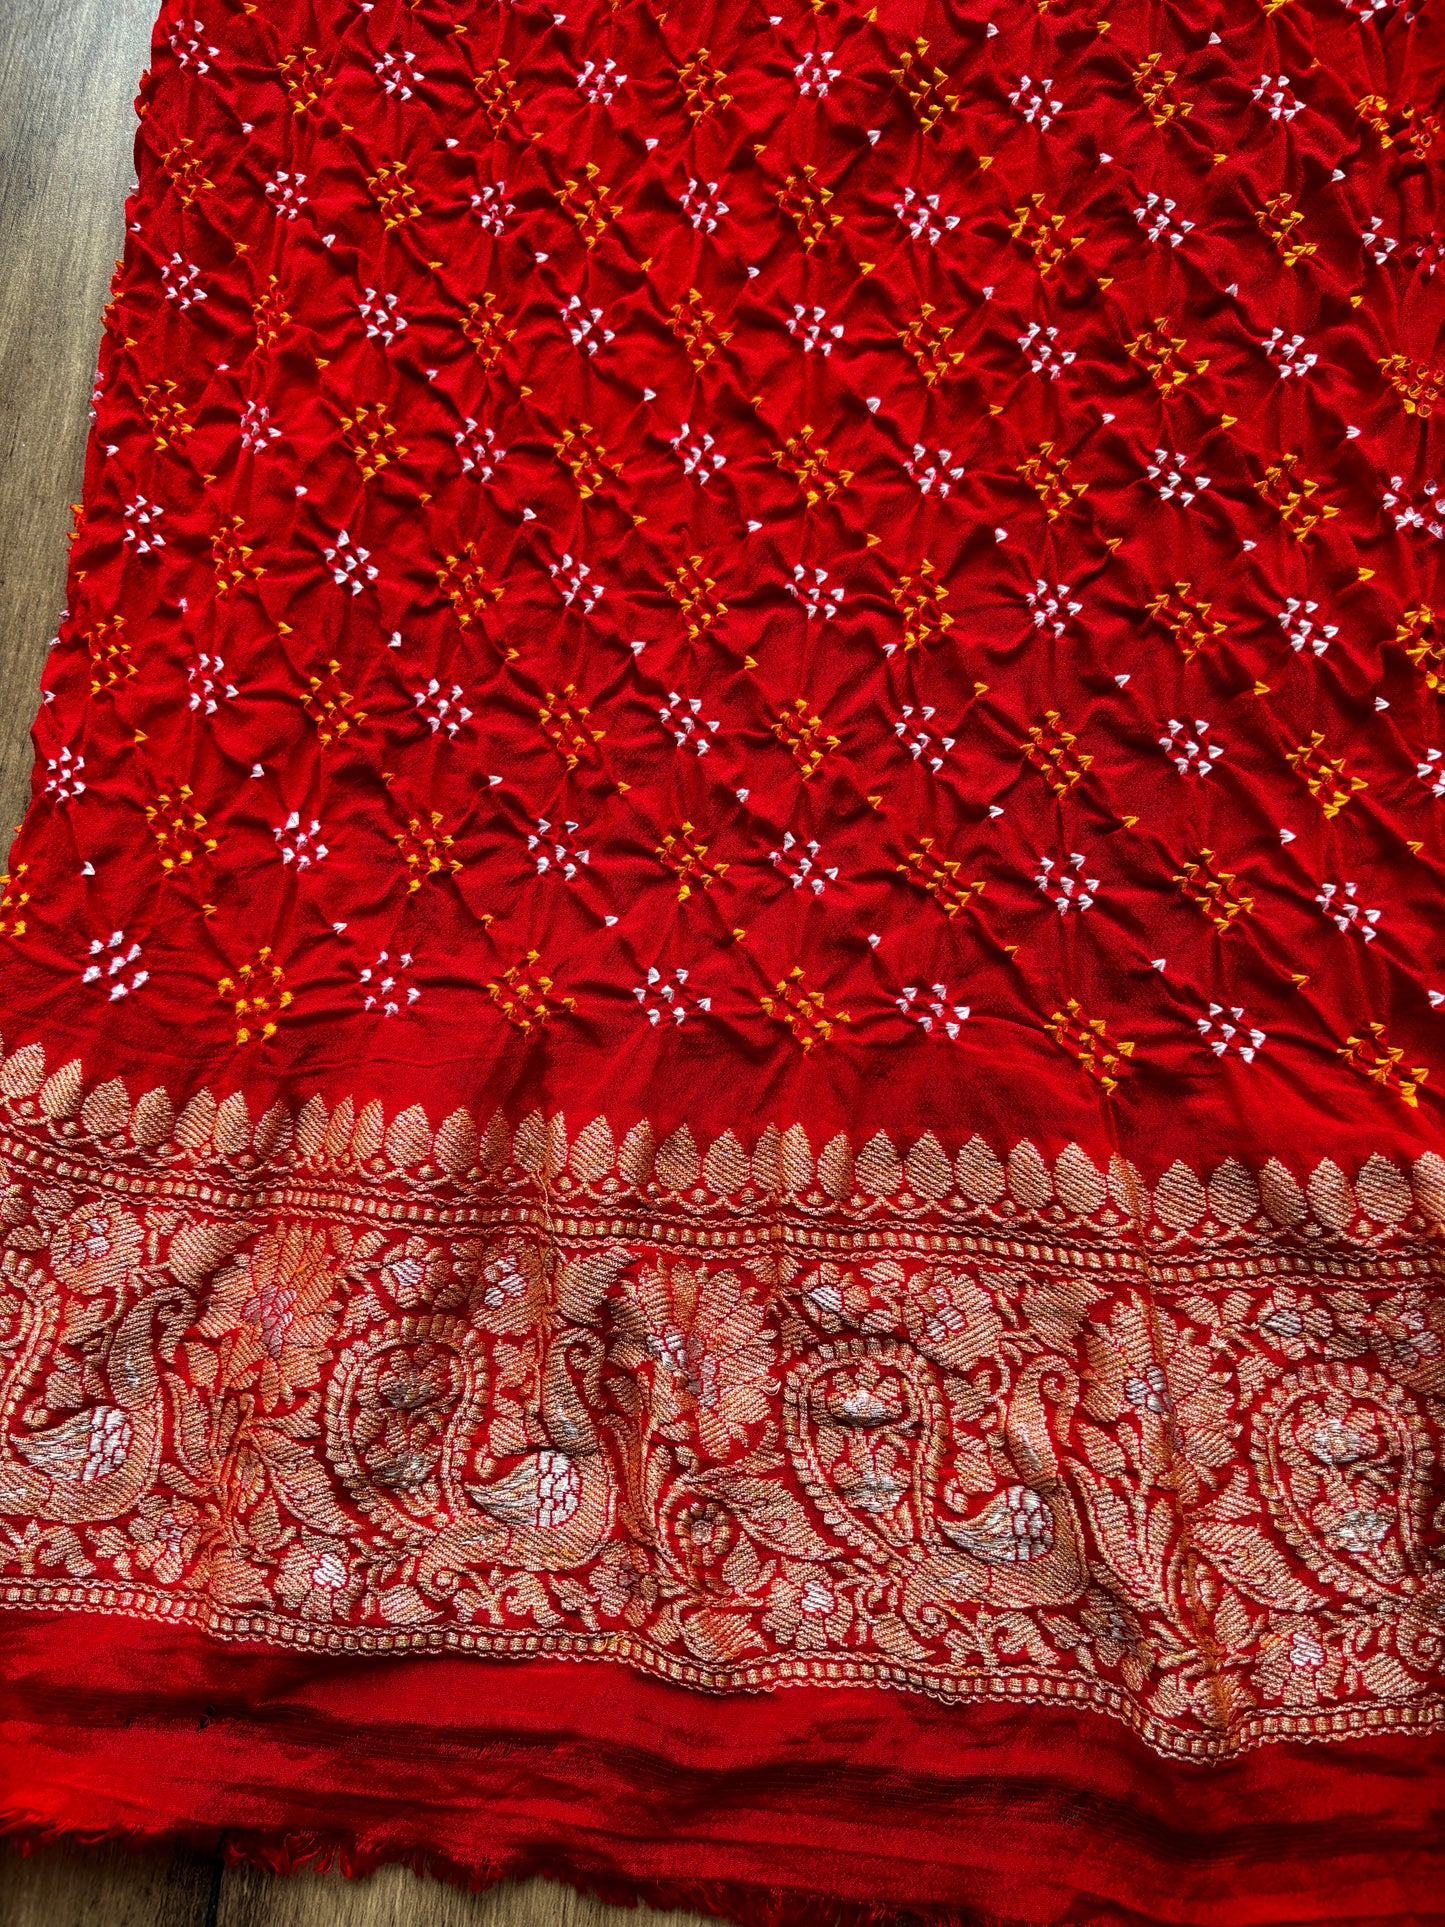 Bridal Bandhej Red Saree